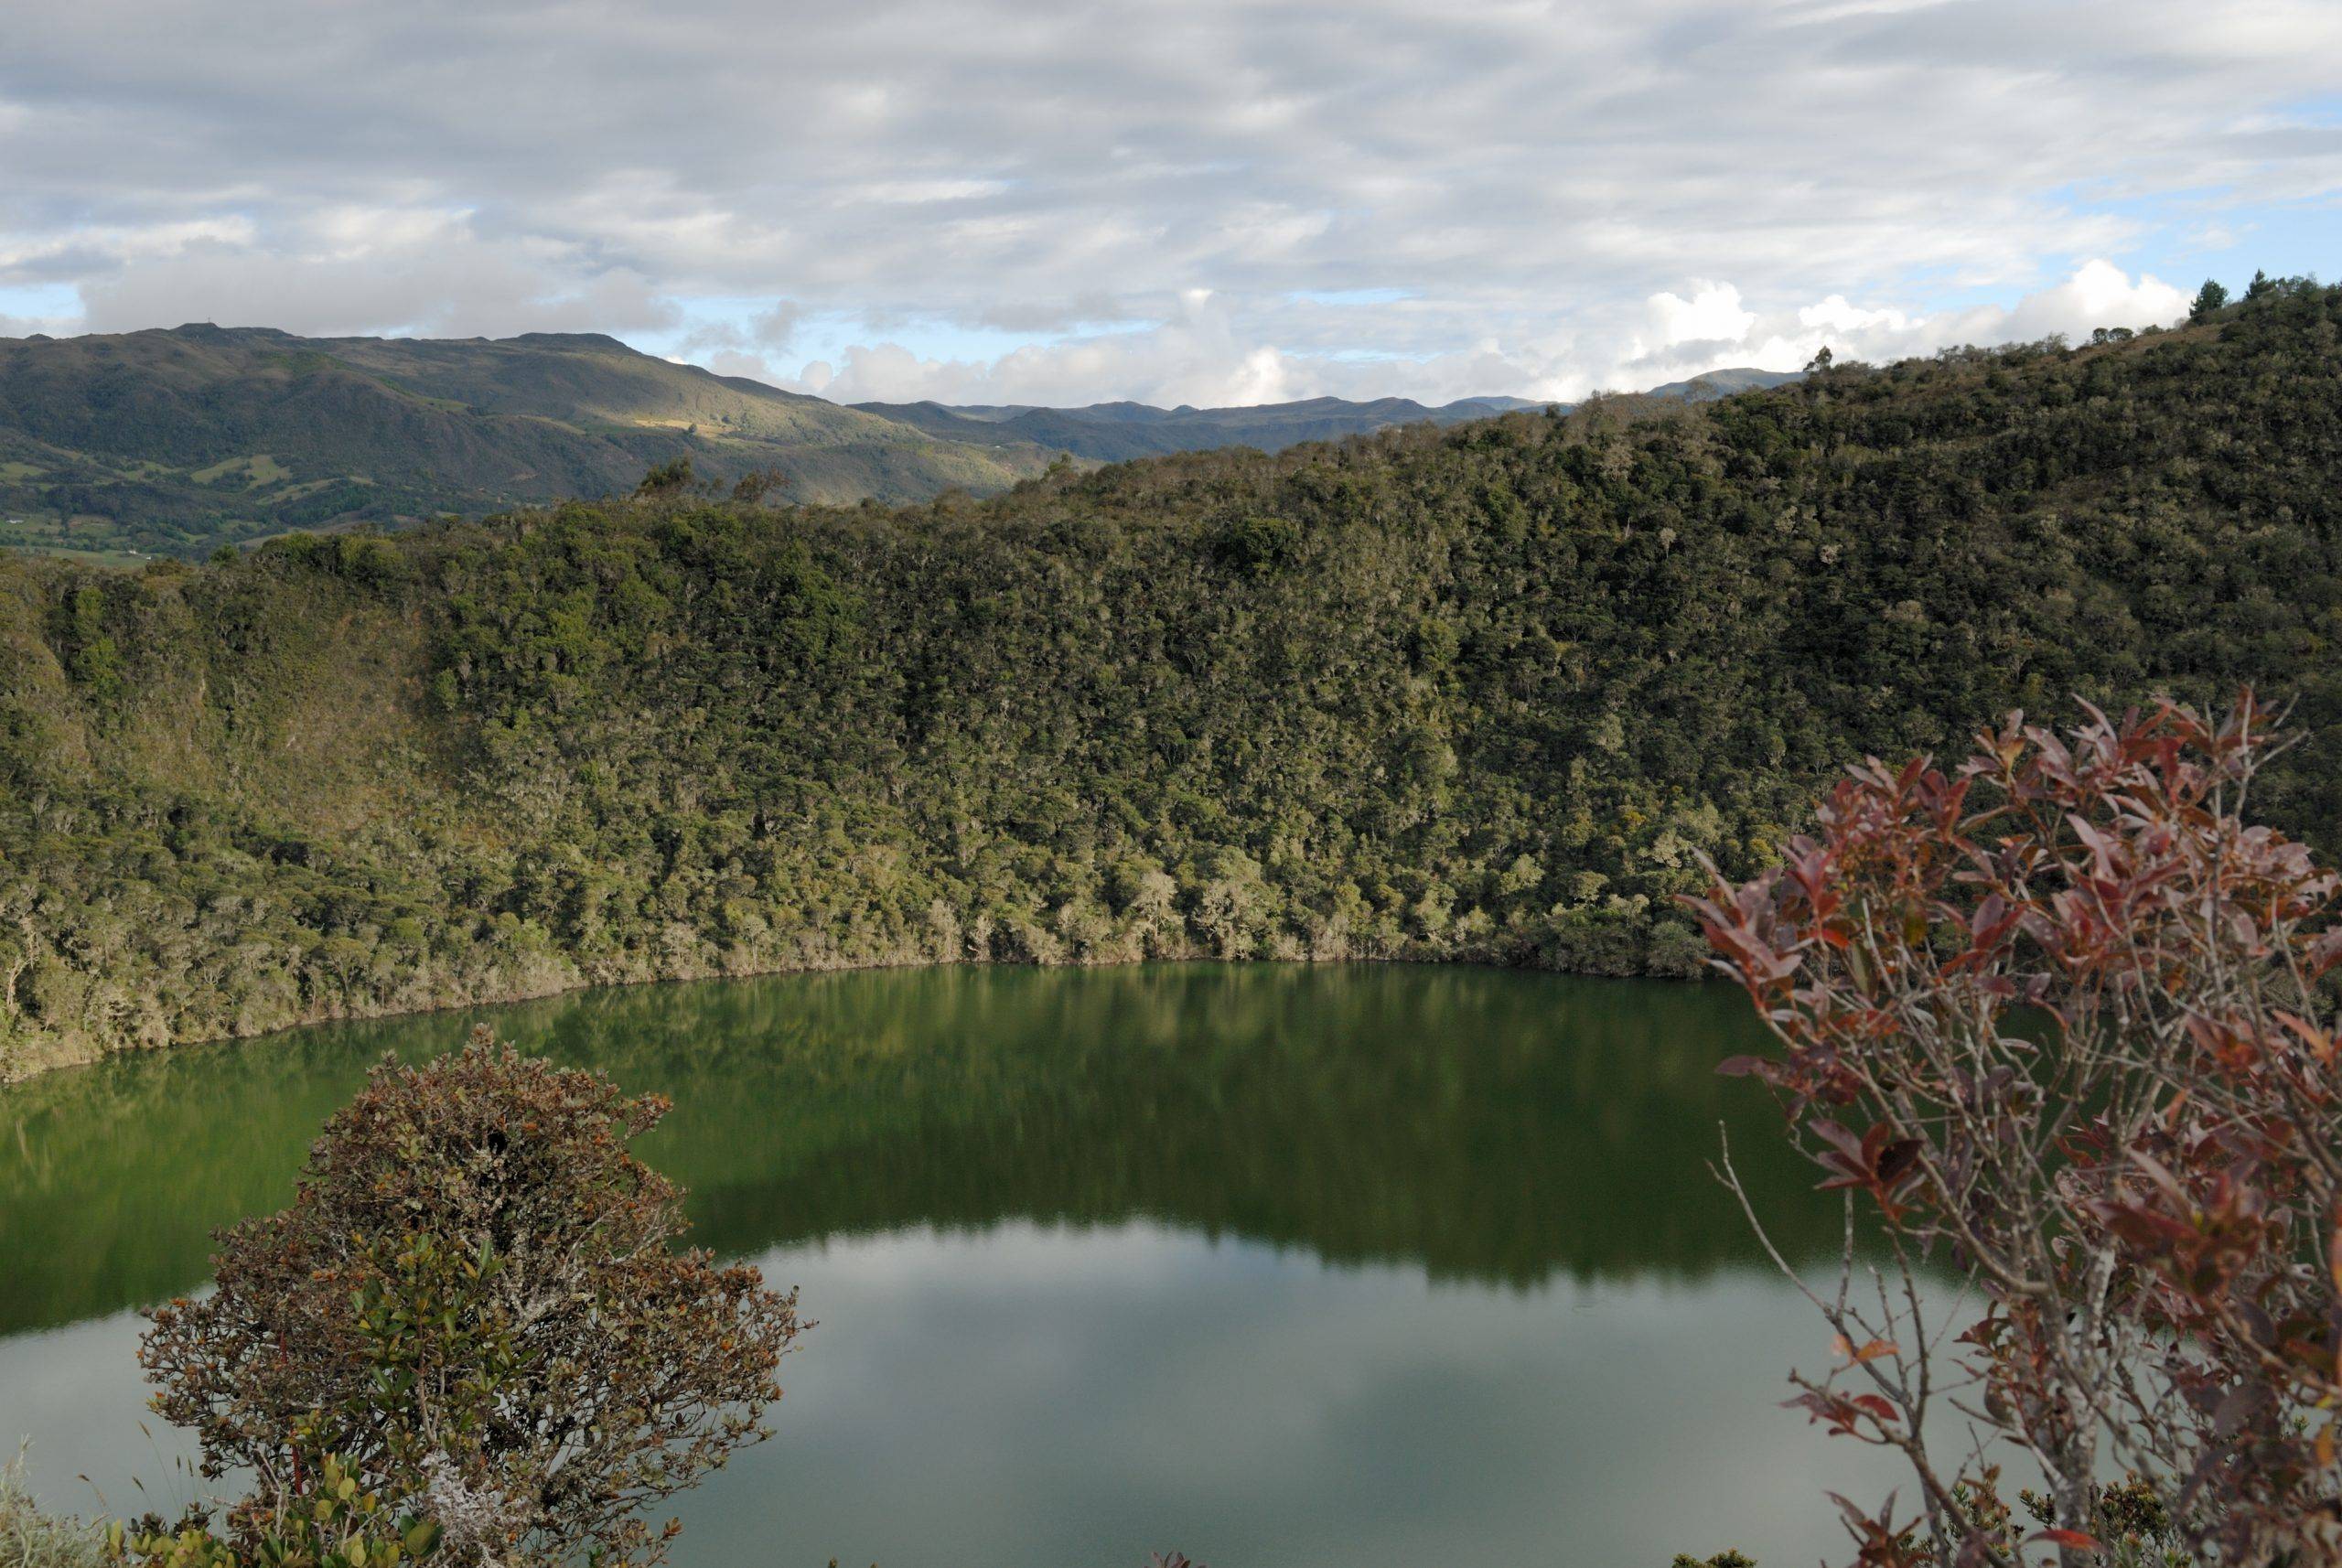 Ein vulkanischer Kratersee auf dem Weg nach Villa de Leyva